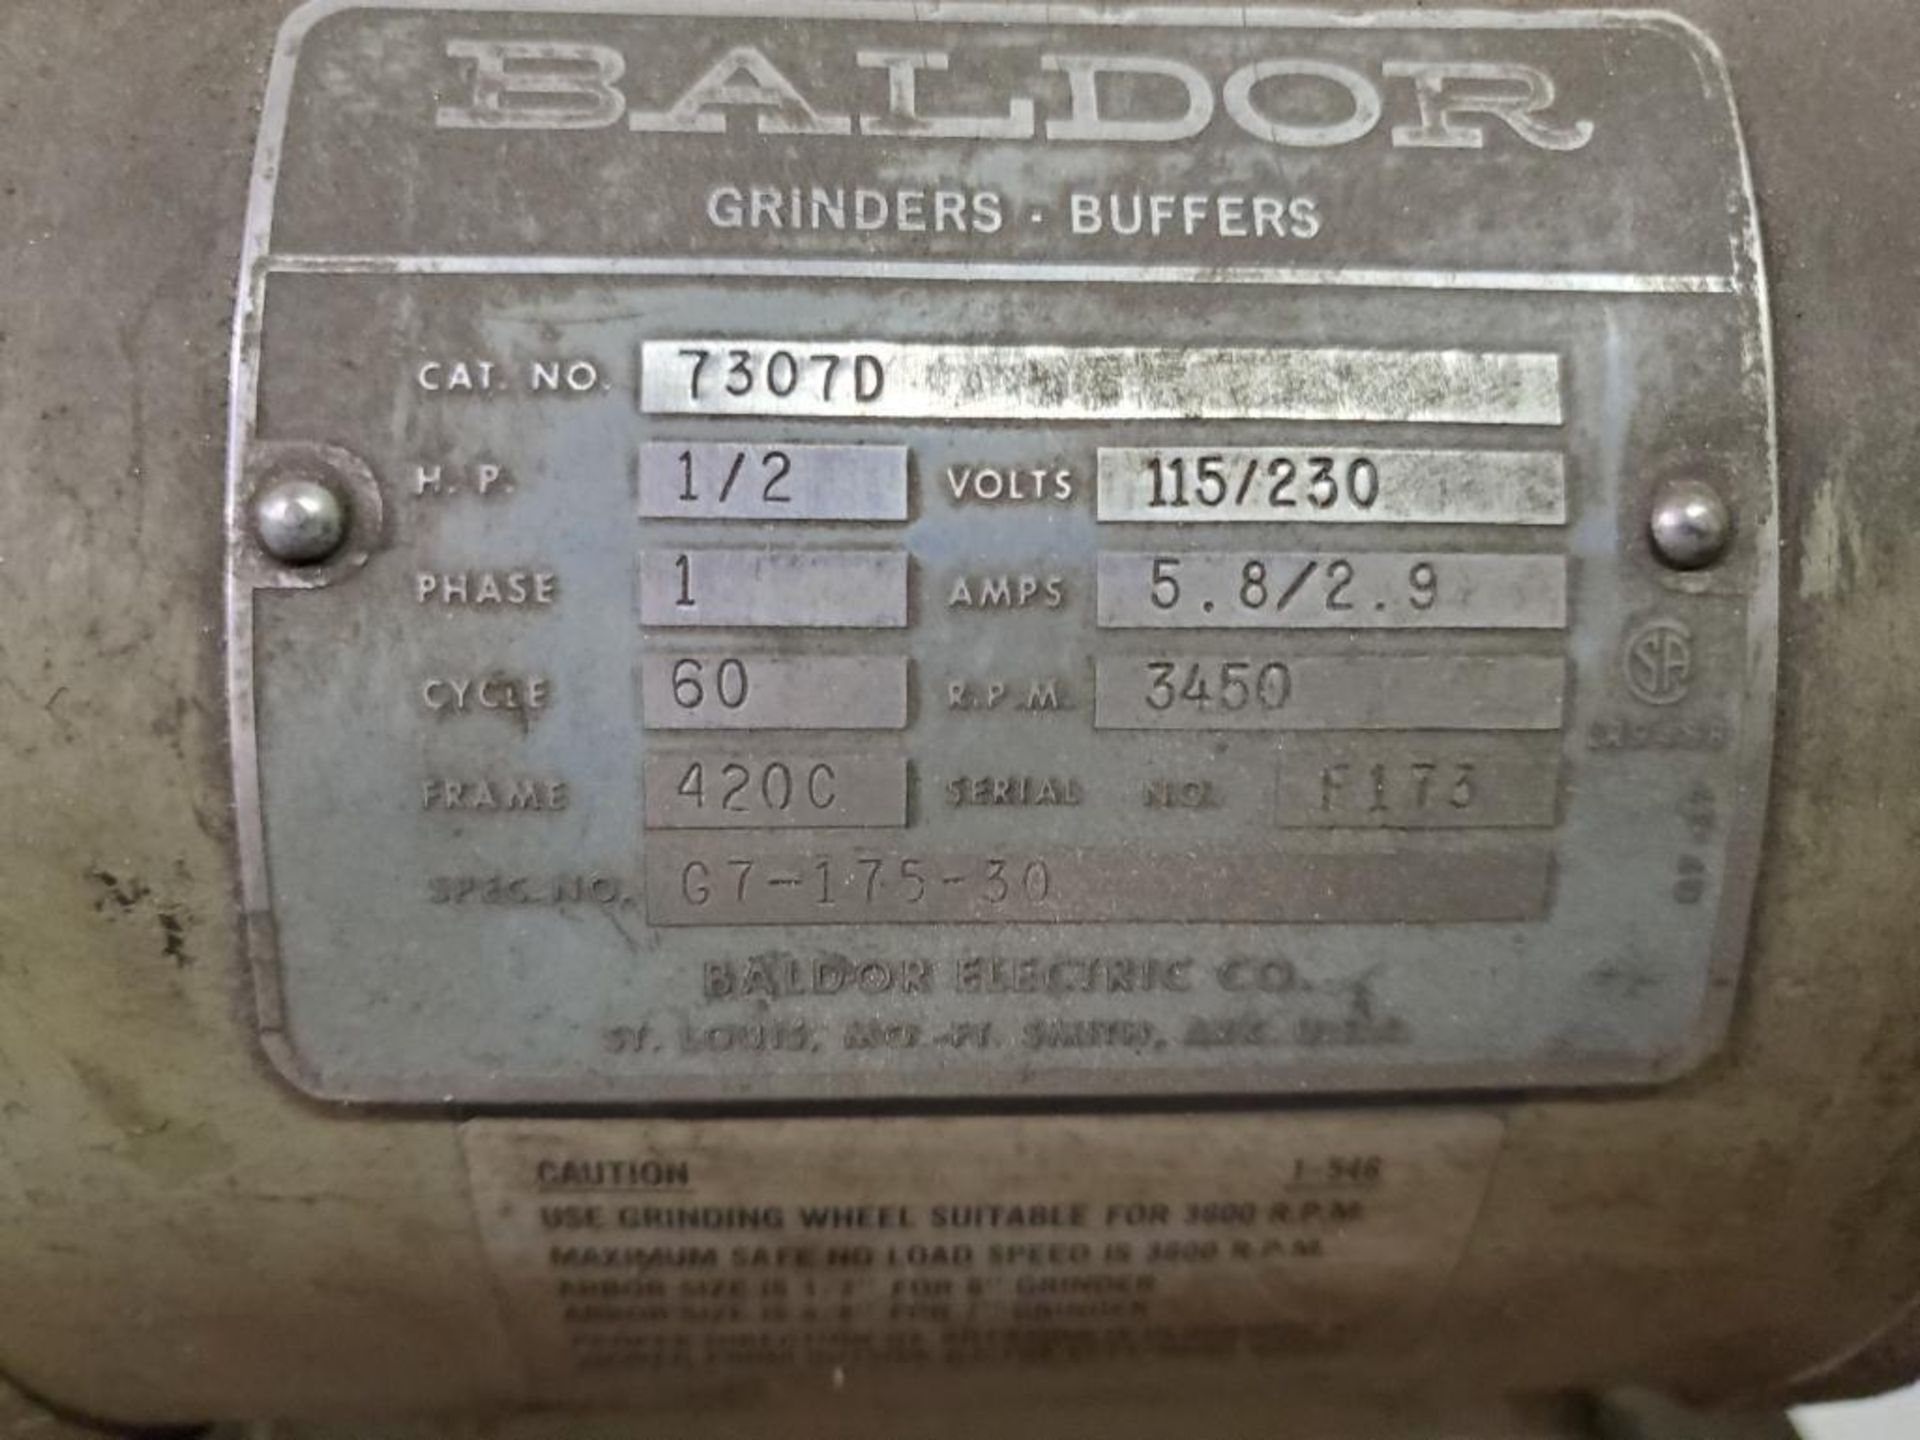 Baldor 6" Double End Pedestal Grinder/Buffer, 1/2 HP, 3450 RPM - Image 4 of 5